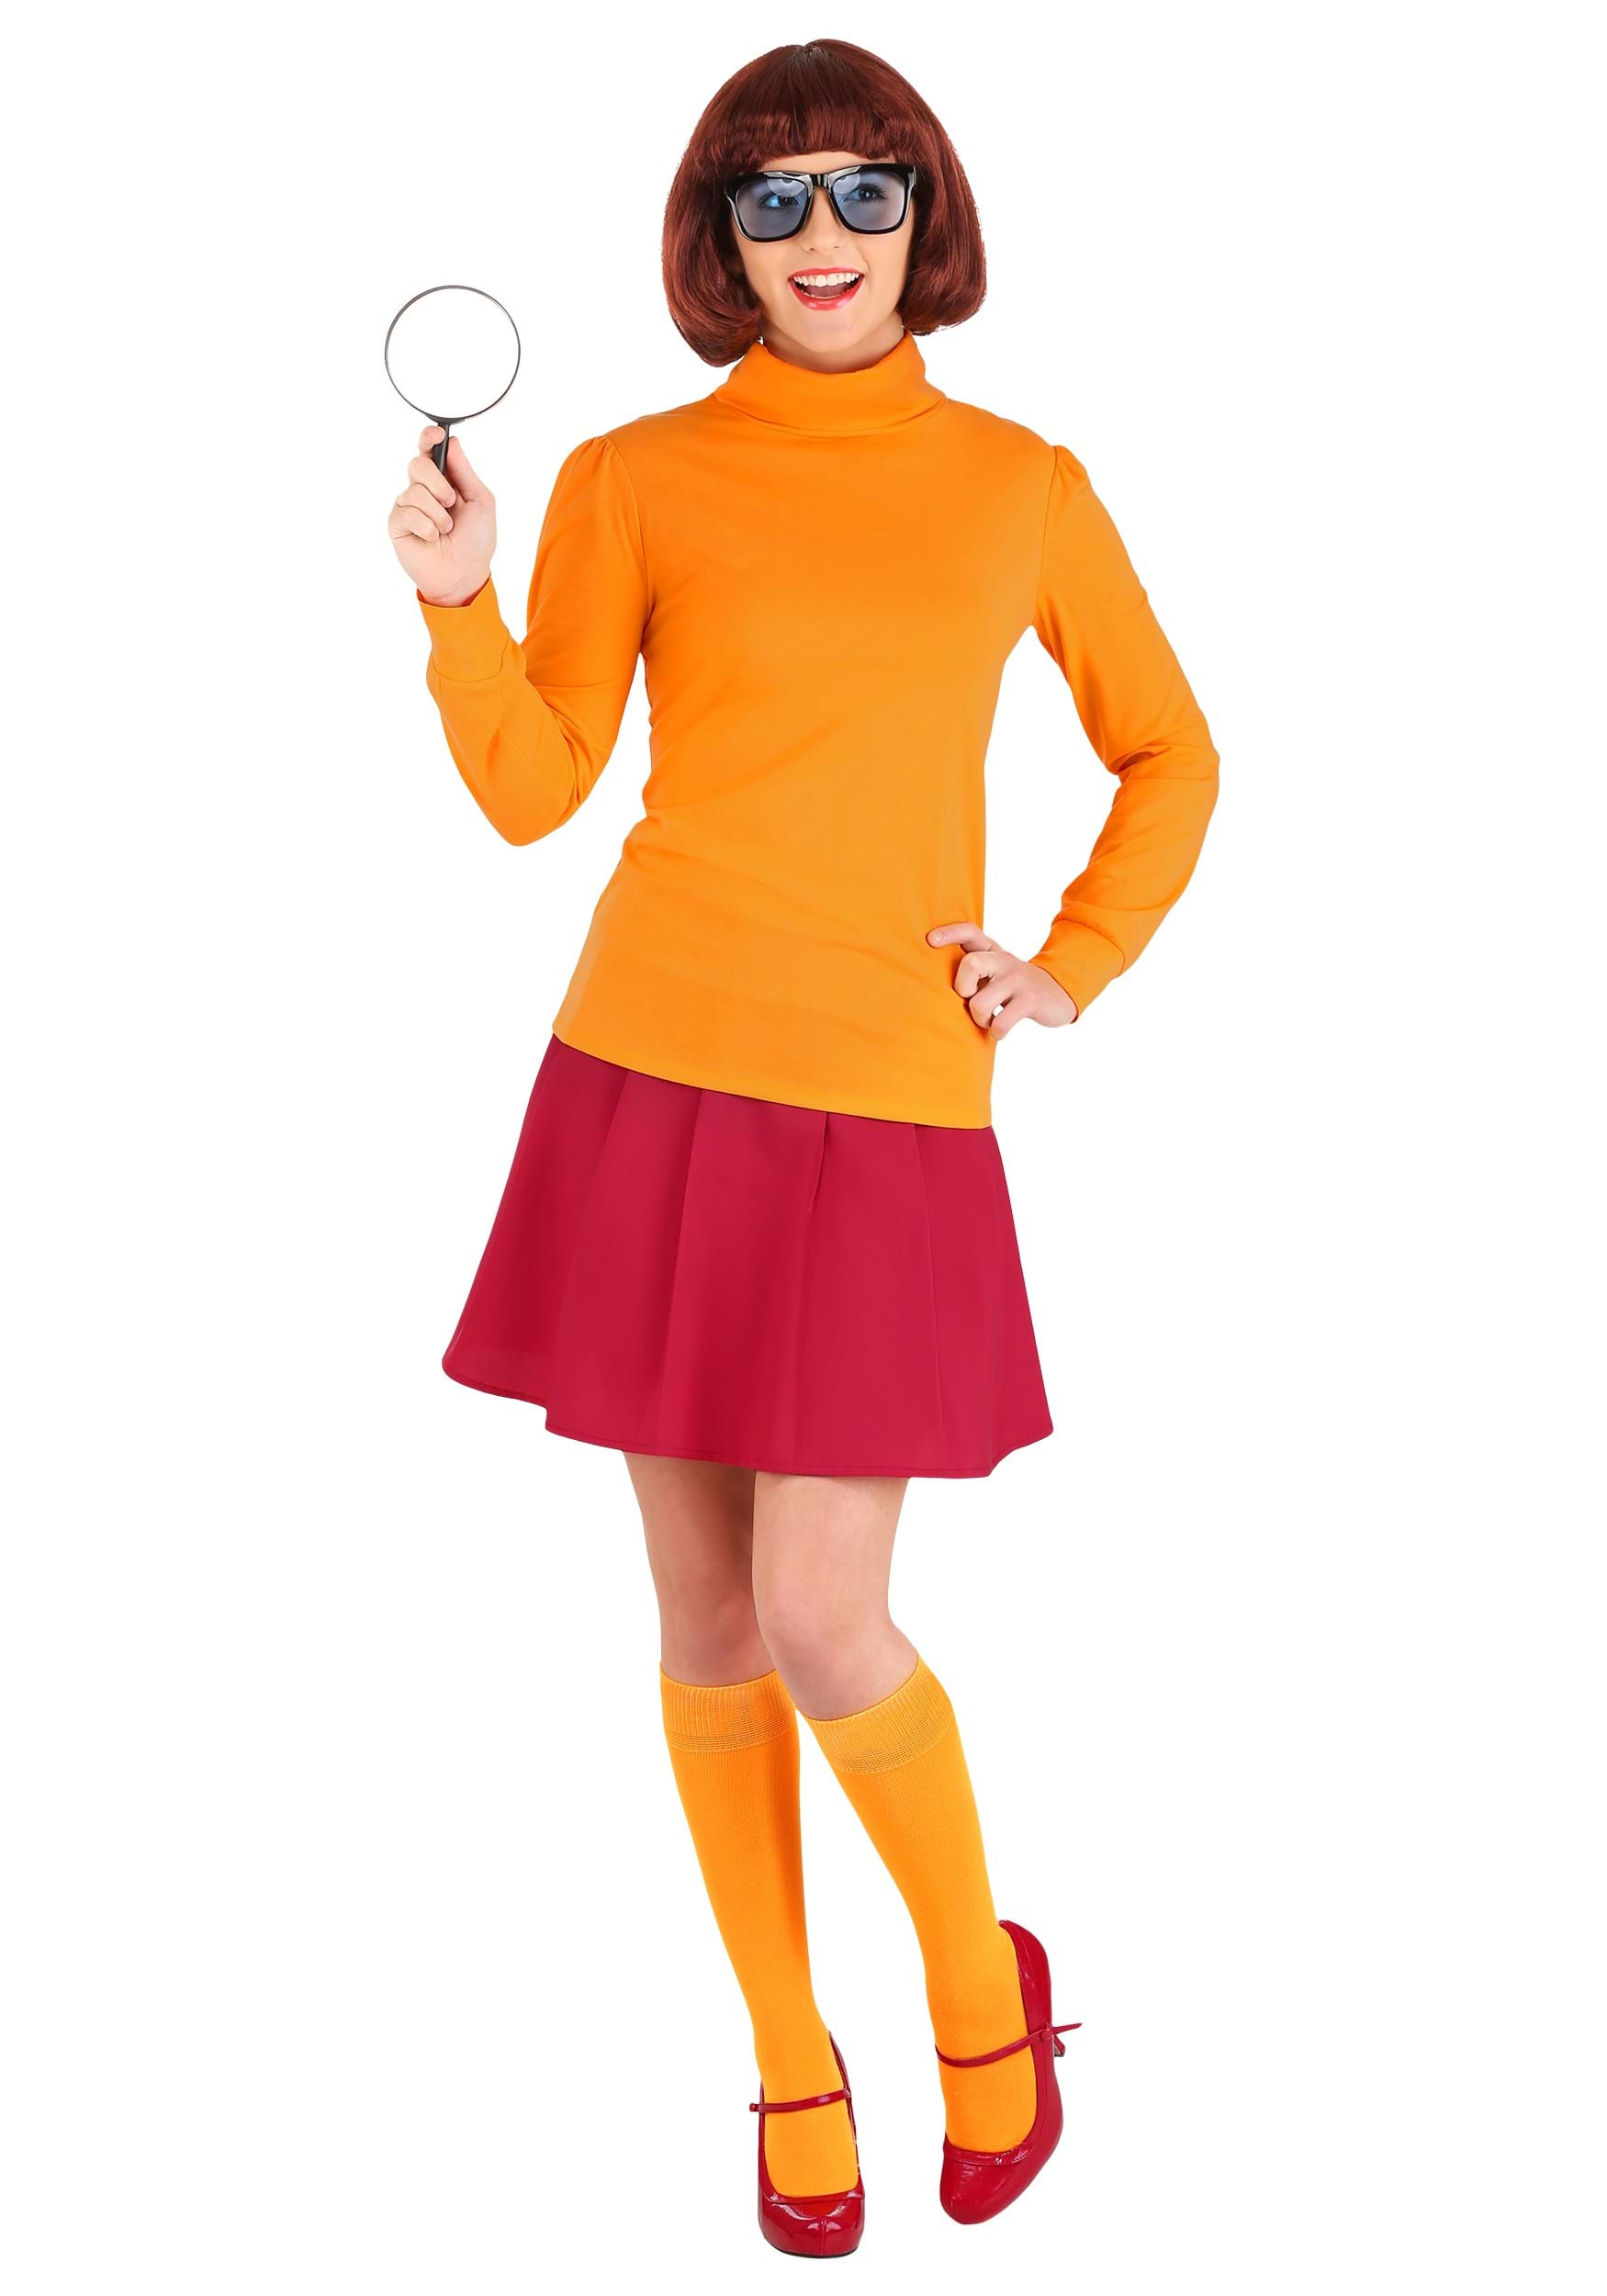 Classic Plus Size Scooby Doo Velma Costume